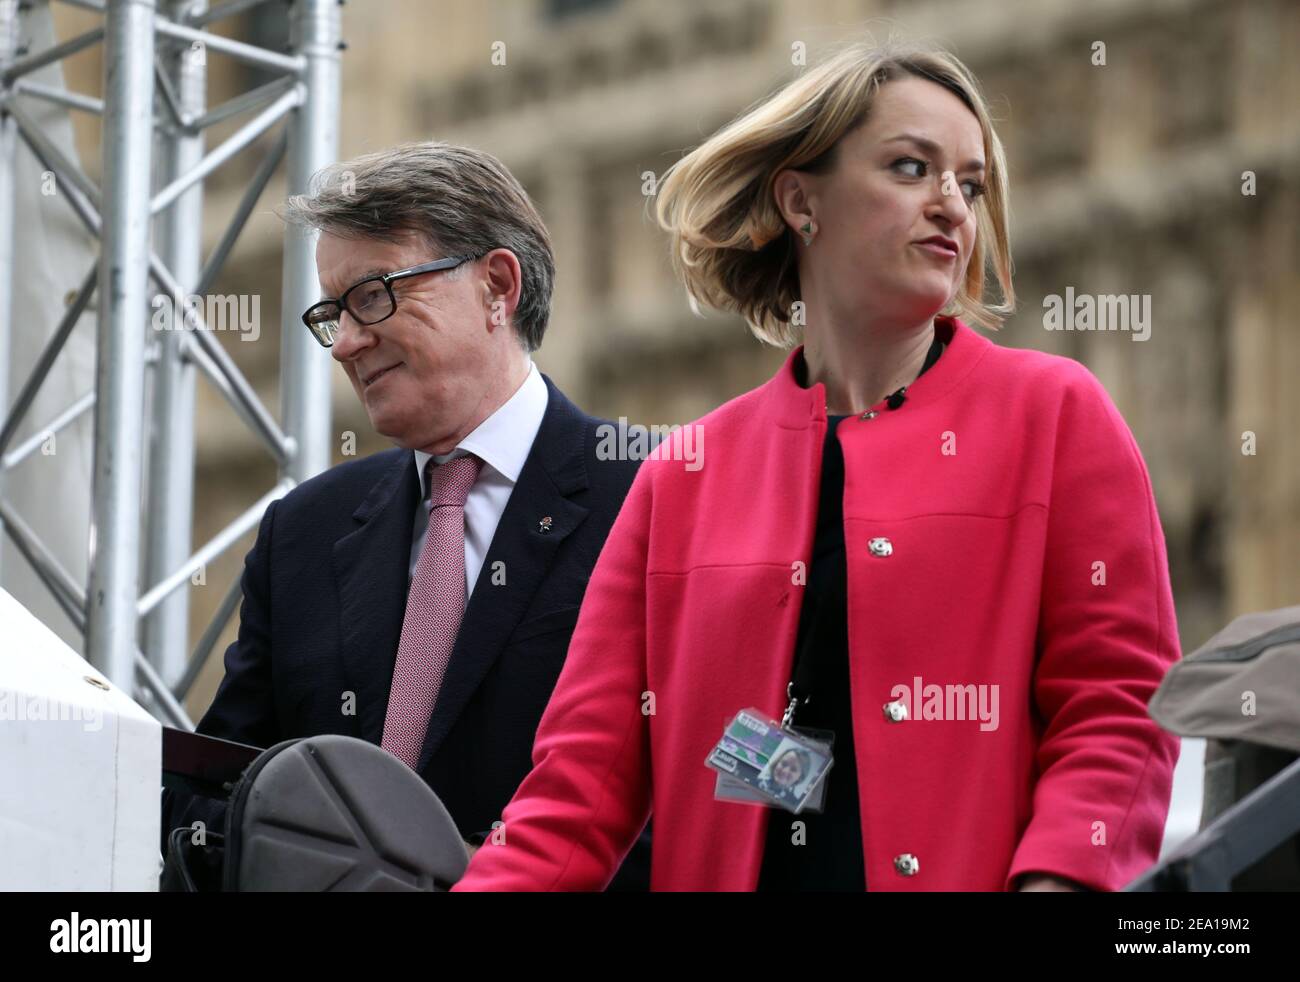 Foto zeigt: Laura Kuensberg Interview und strahlend aussehende Peter Mandelson Pic von Gavin Rodgers/Pixel 8000 Ltd Stockfoto